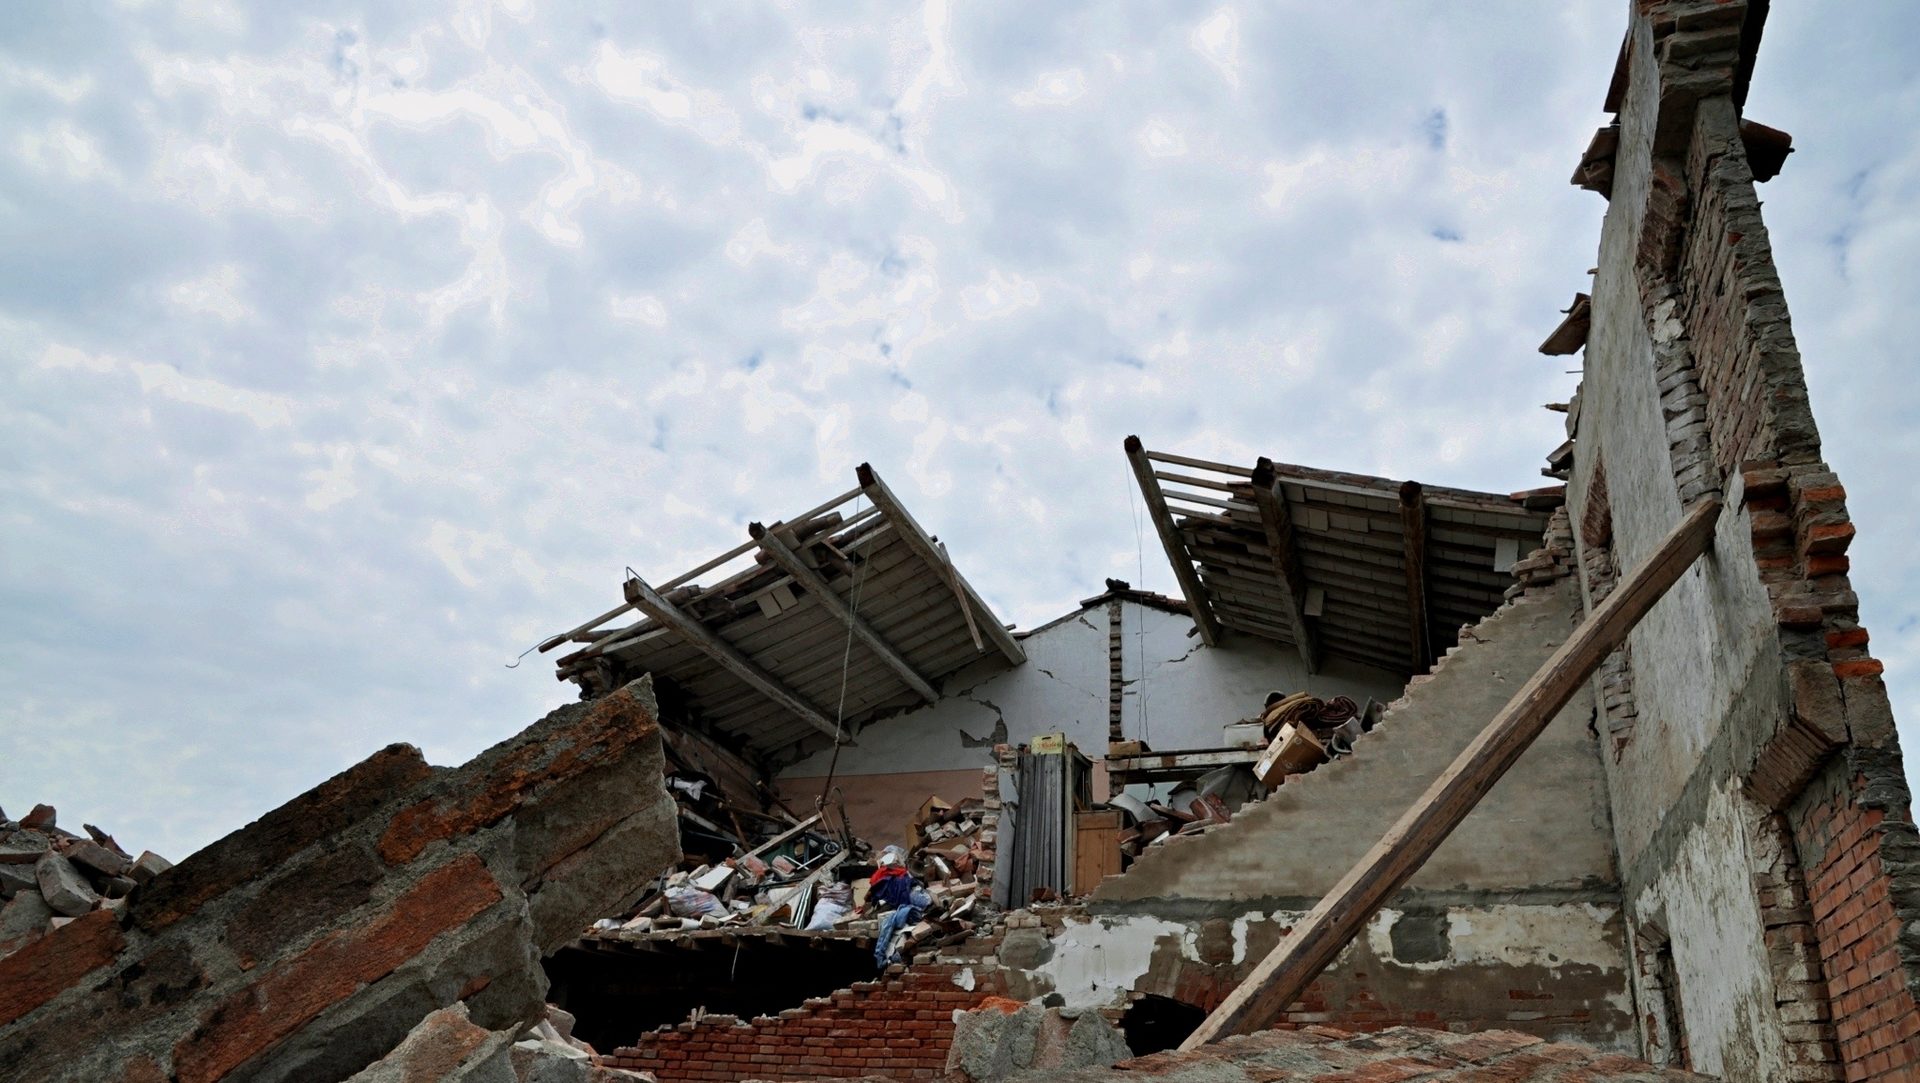 Maison détruite lors d'un tremblement de terre en Italie (photo wikimedia commons Mario Fornasari CC BY 2.0)